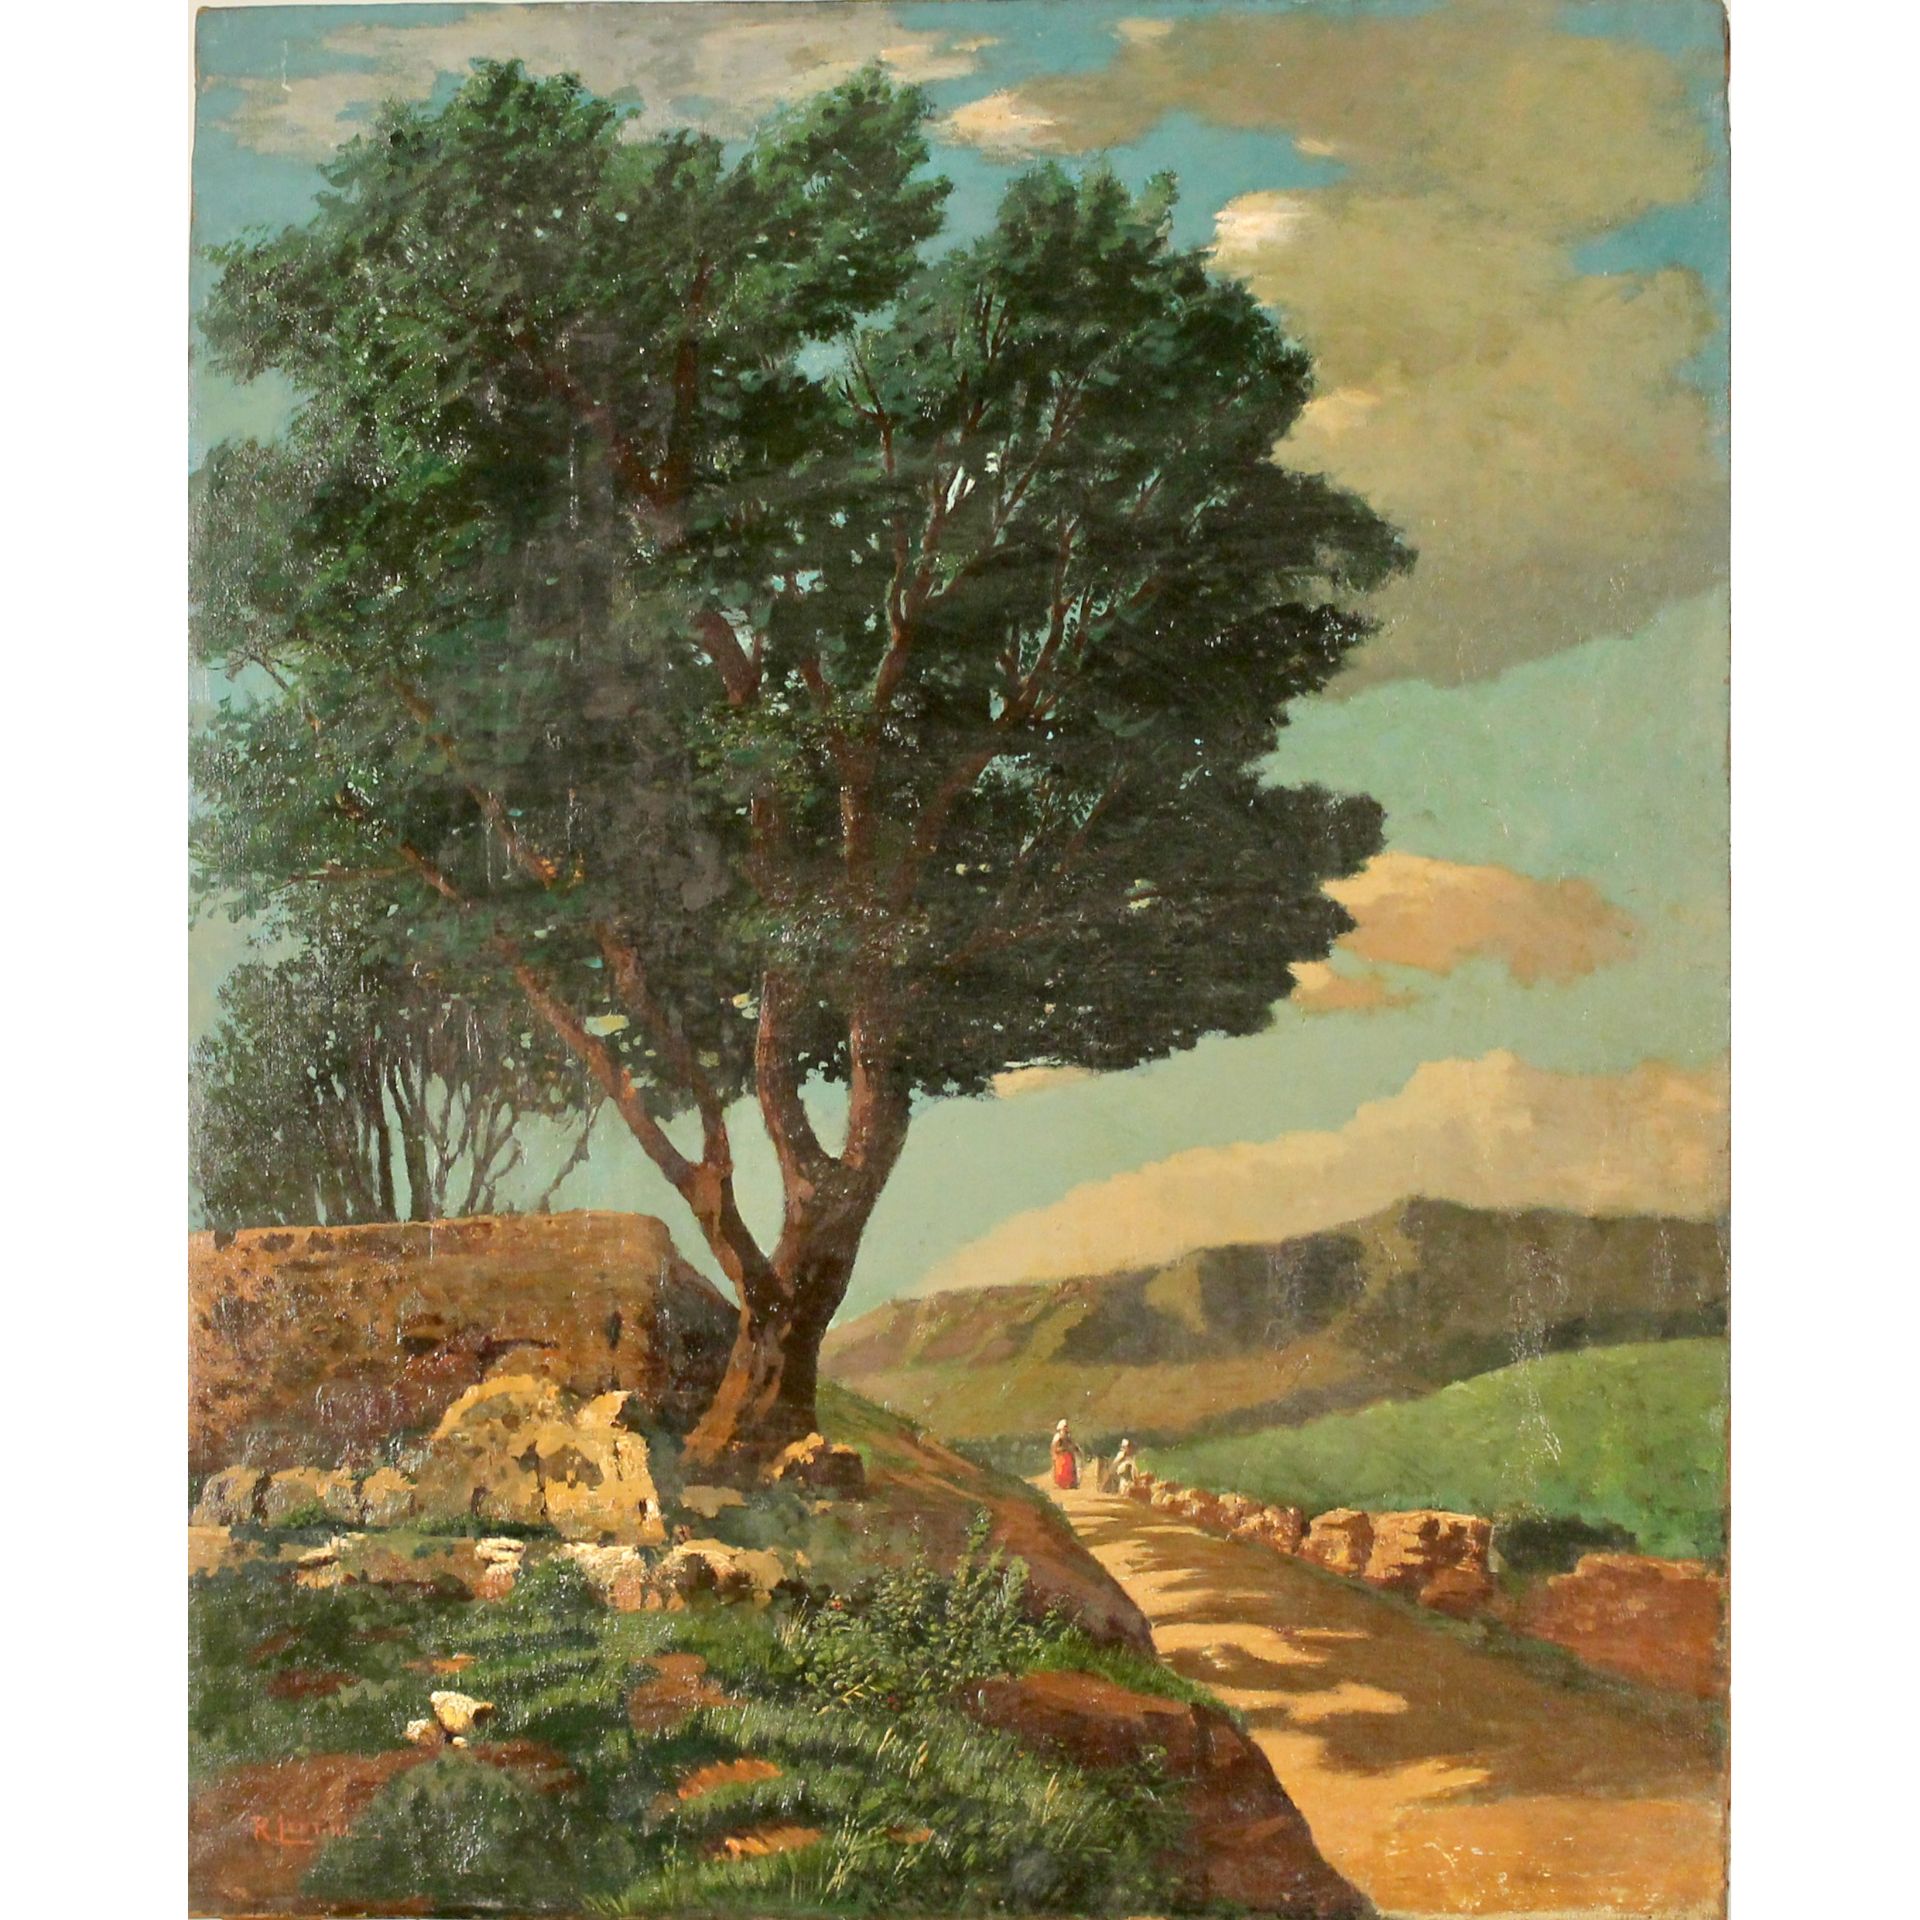 Rocco Lentini (1858/1943) "Paesaggio di campagna con figure" - "Country landscape with figures"